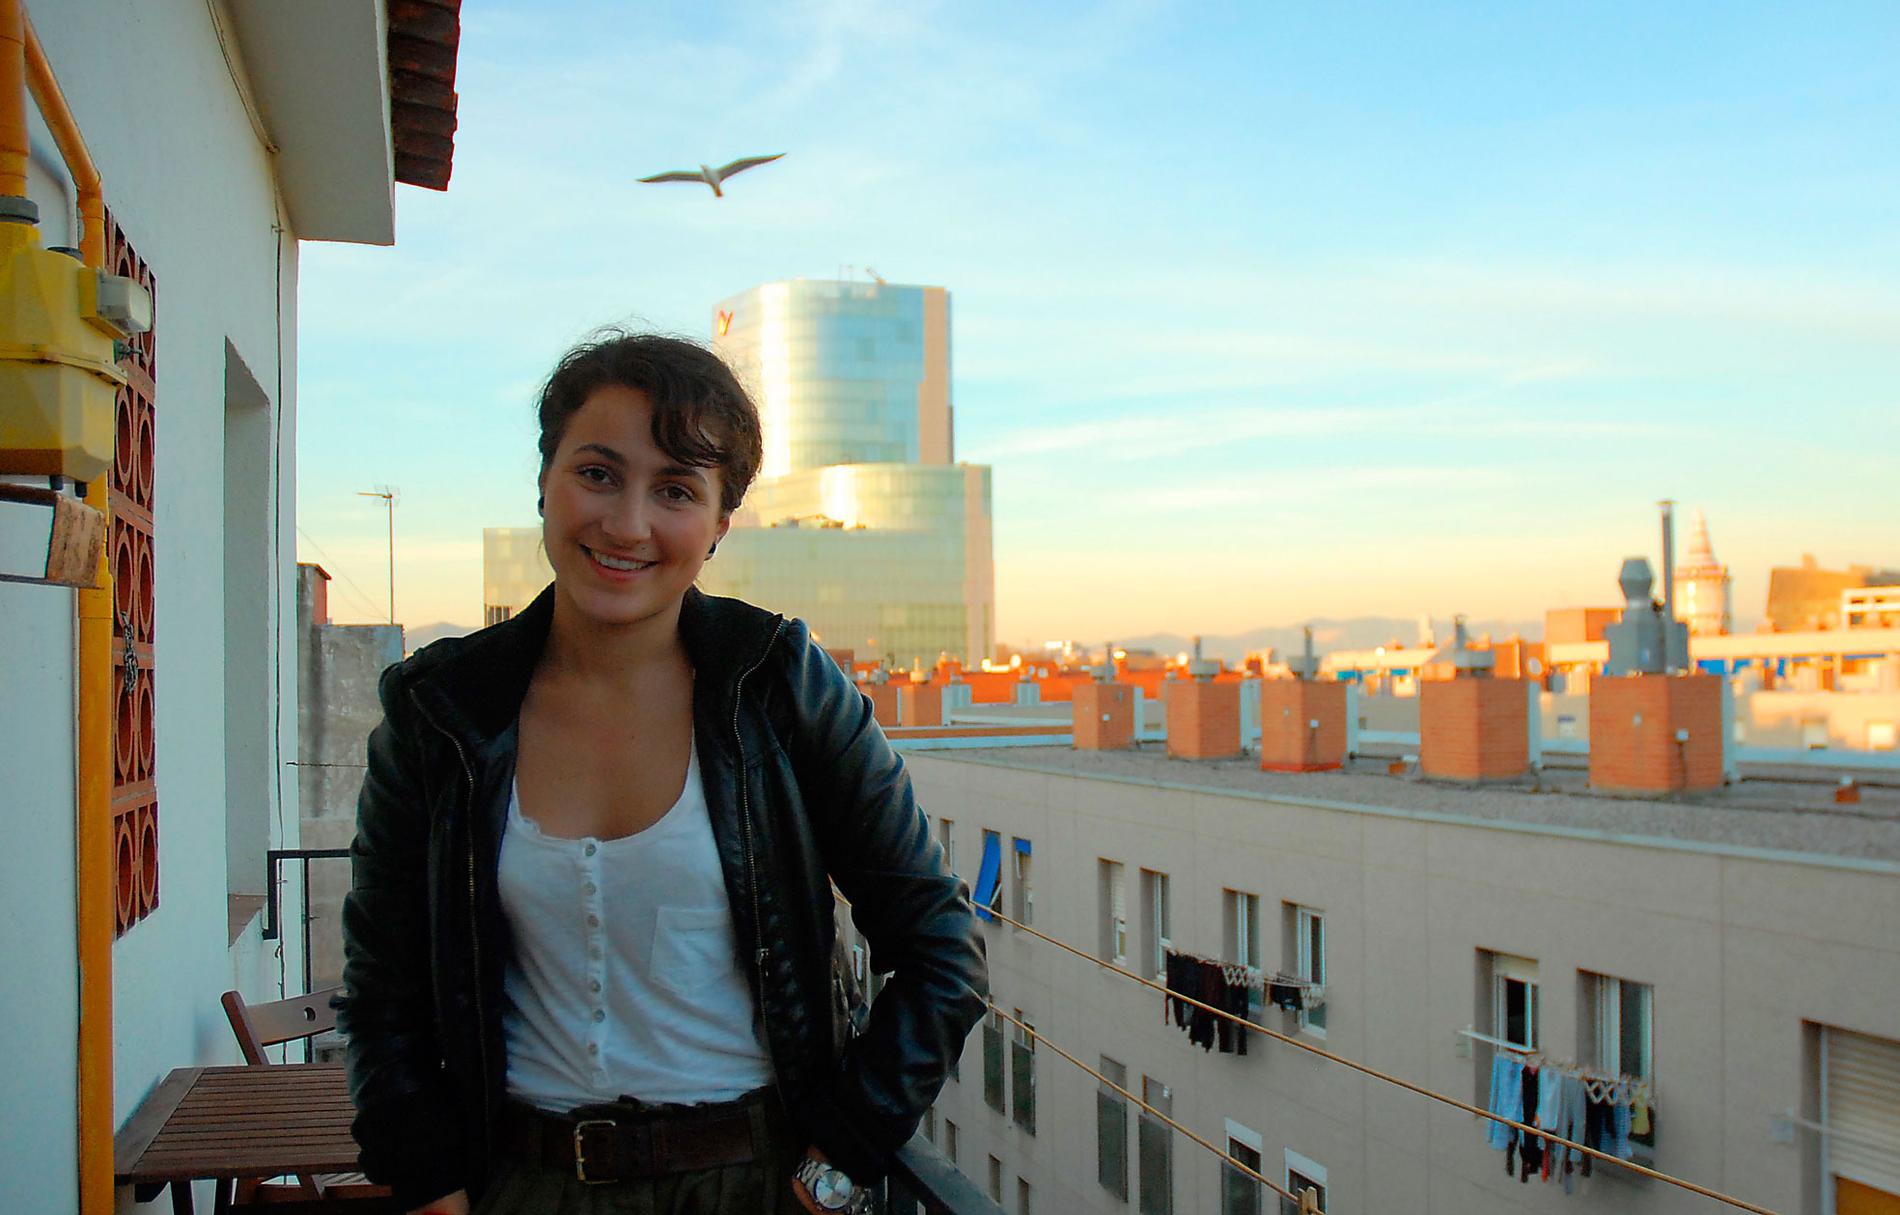 KÖPTE LÄGENHET I BARCELONA Rasha El-Ahmad, 25, från Uppsala, studerar till läkare i Barcelona och investerade i en lägenhet i stans centrala delar i höstas. ”Lägenhetspriserna här har sjunkit med nästan 25 procent, så det kändes som ett bra läge. Hela min familj älskar Barcelona, och lägenheten kommer vi att ha kvar länge”, säger hon.